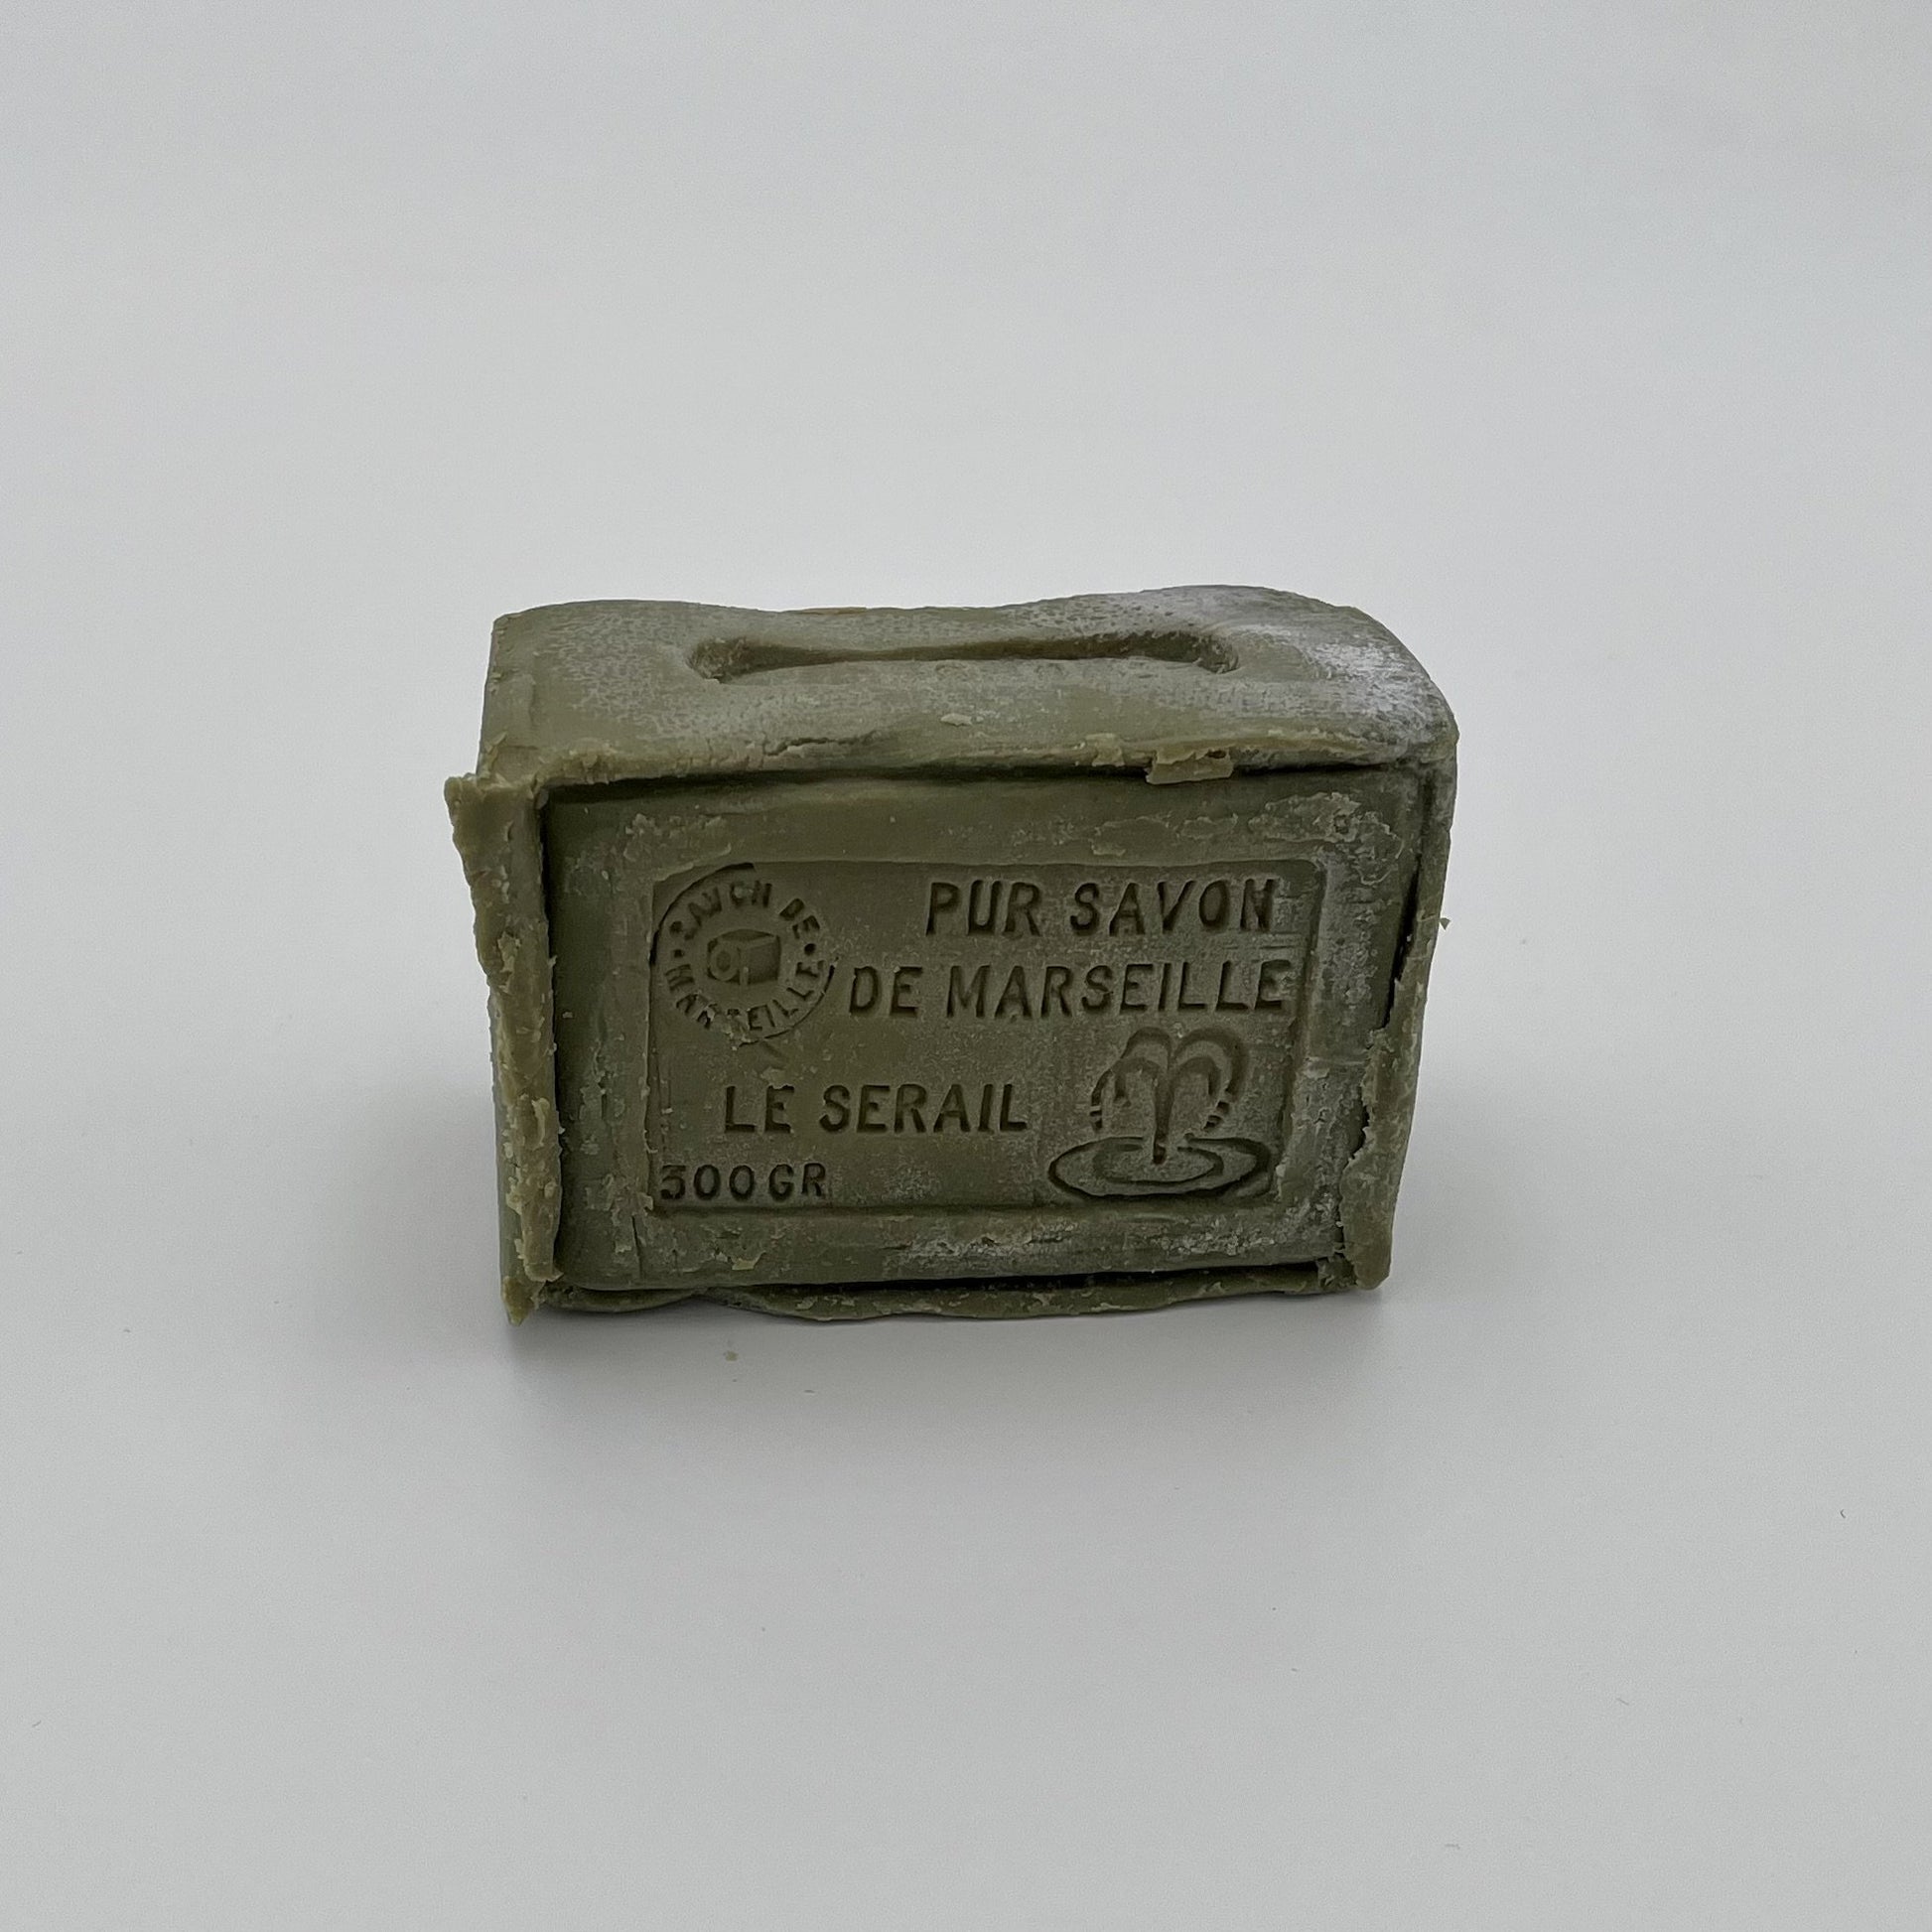 Le Serial Savon de Marseille olive oil soap 300g